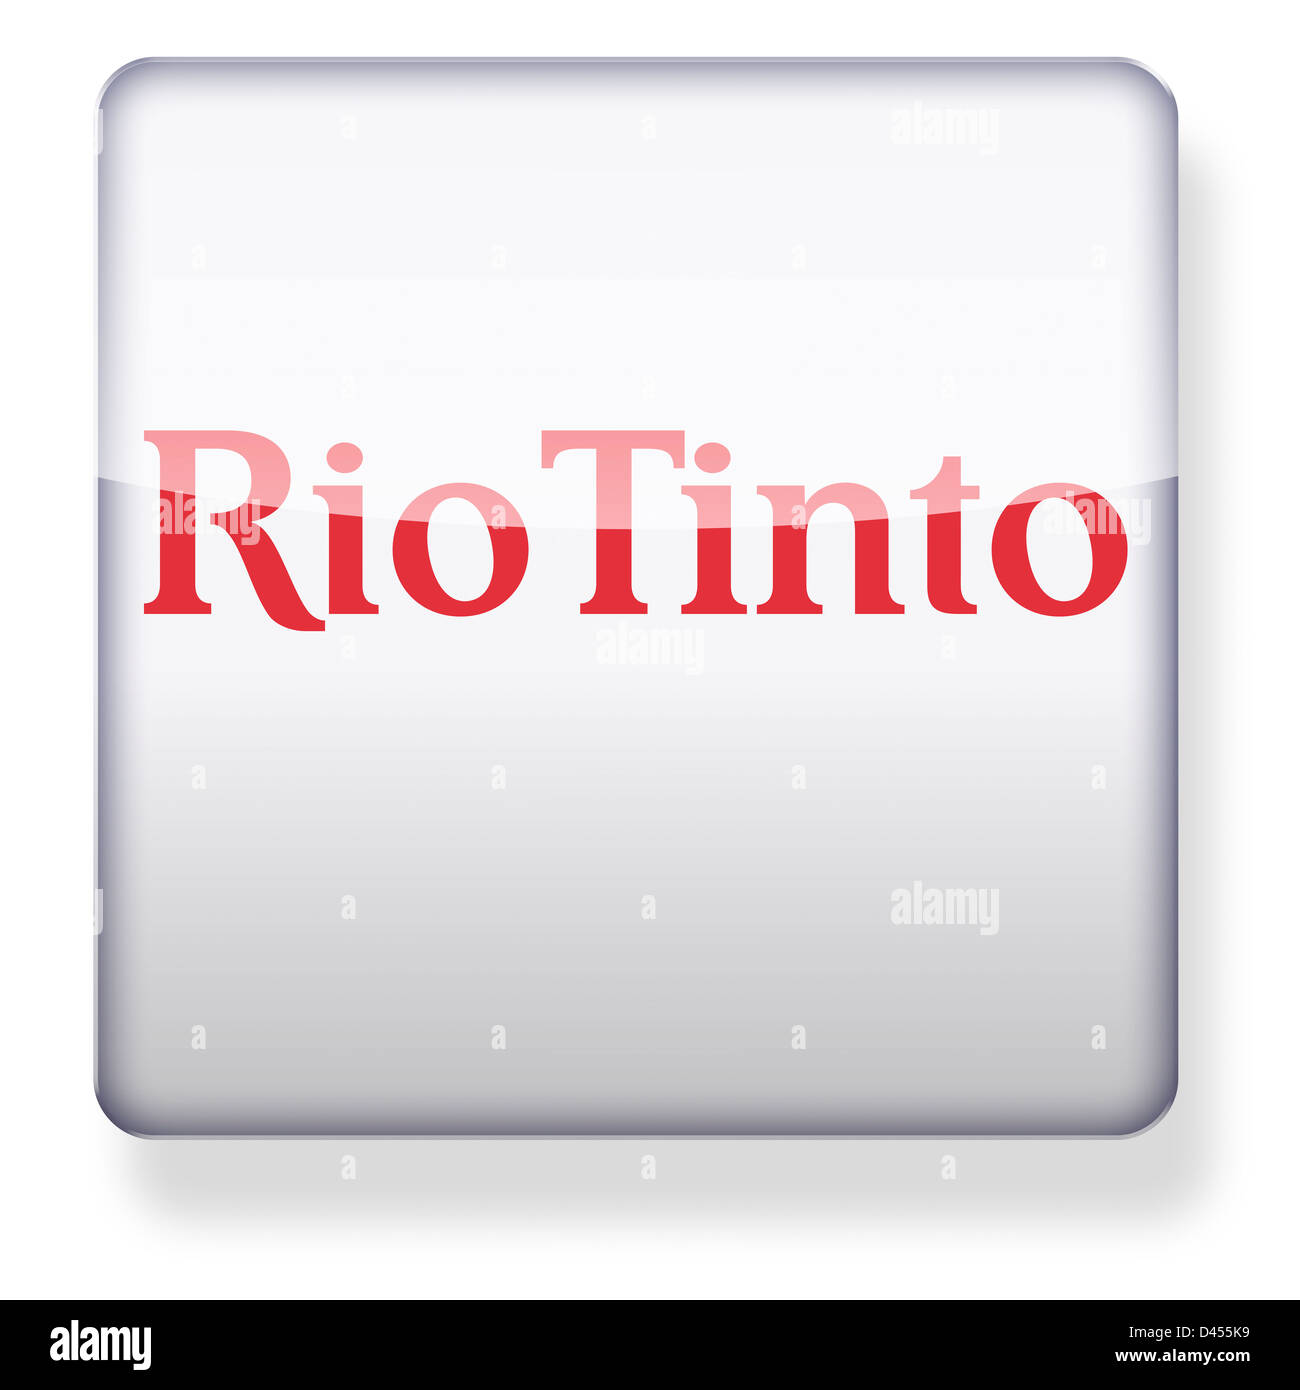 Rio Tinto logo as an app icon. Clipping path included. Stock Photo